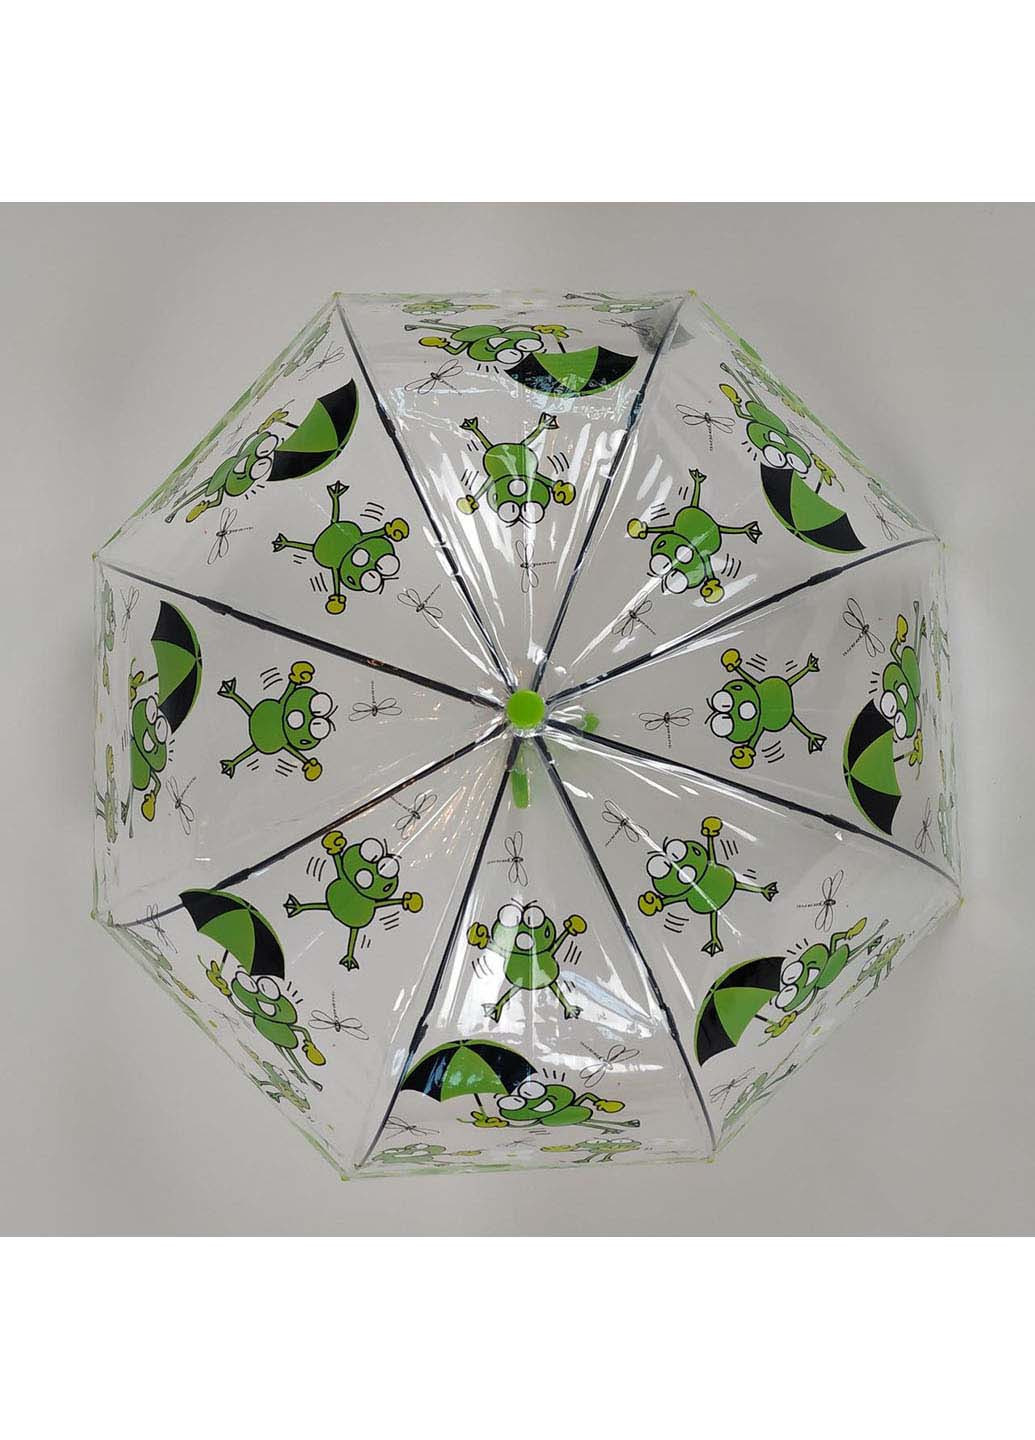 Зонт Paolo Rosi 207-4 трость комбинированный